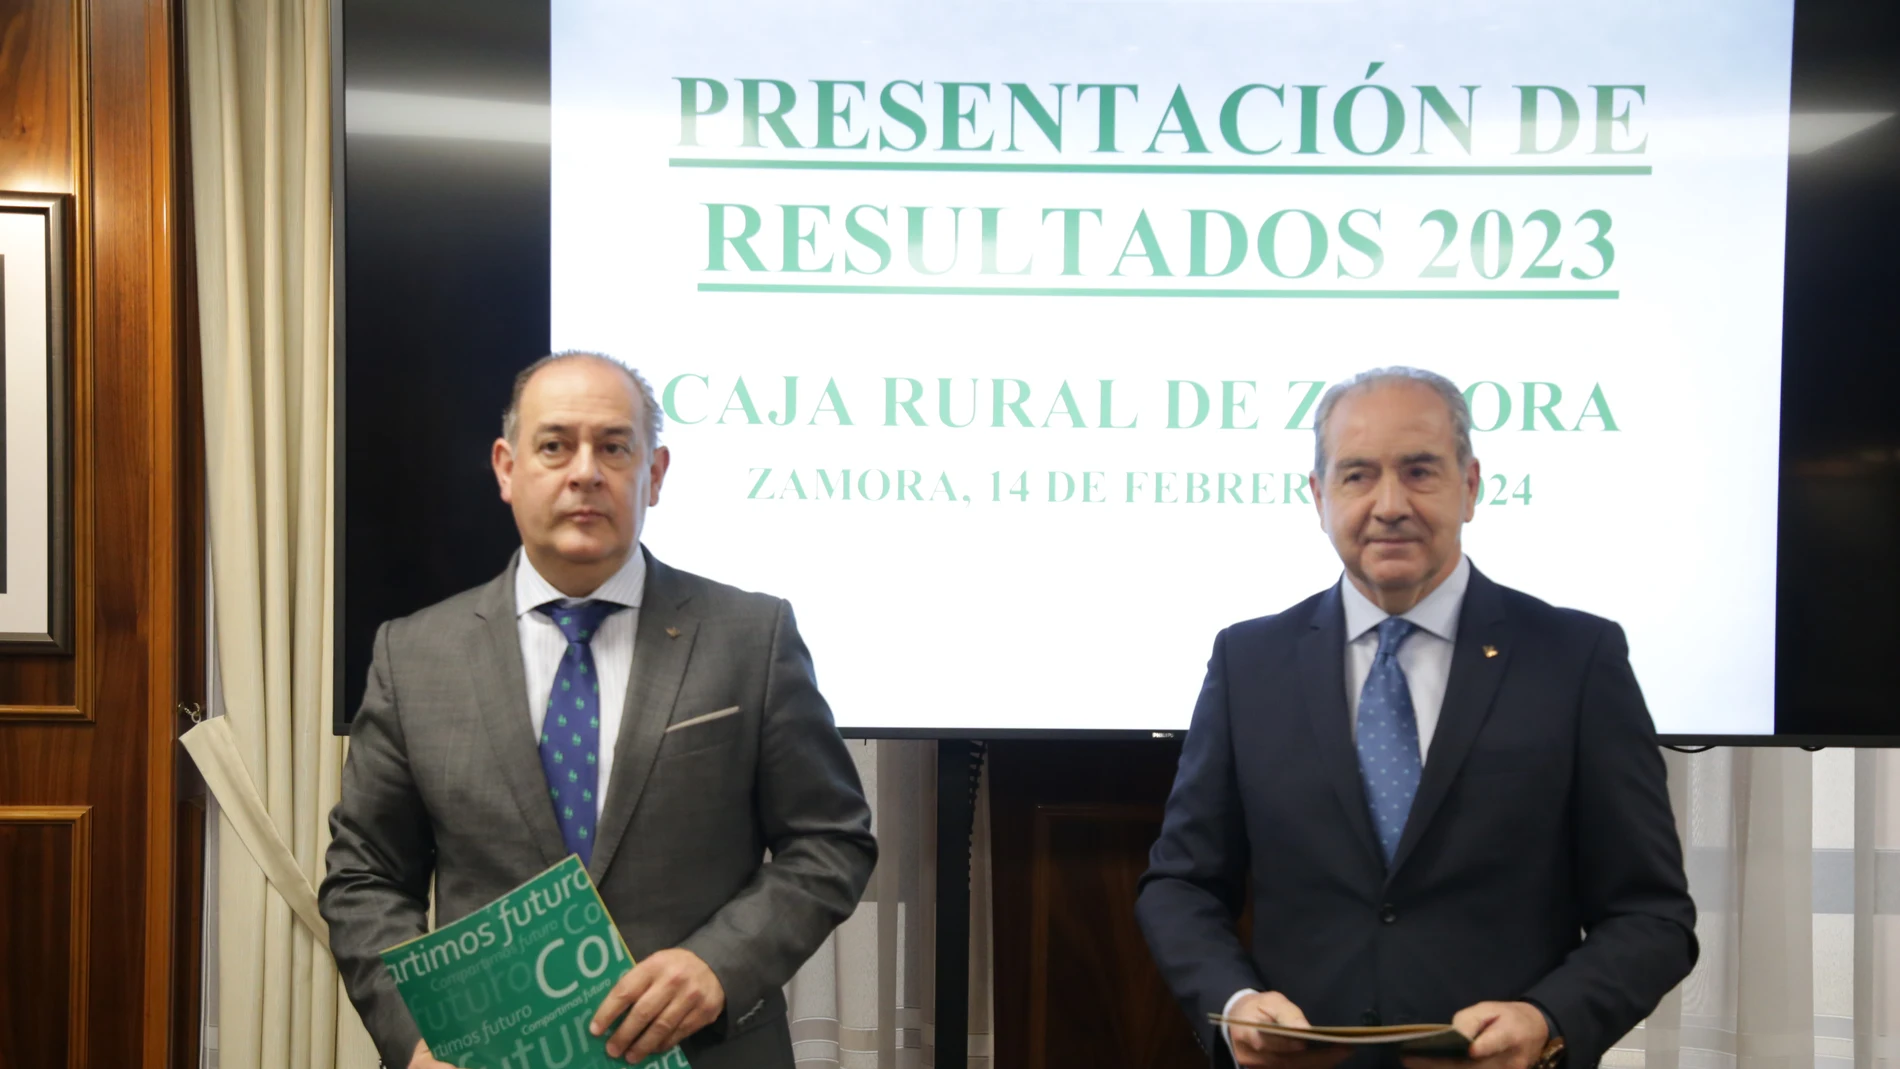 El presidente de Caja Rural de Zamora, Nicanor Santos, y el director general, Cipriano García,presenta el balance y cuenta de pérdidas y ganancias de la entidad